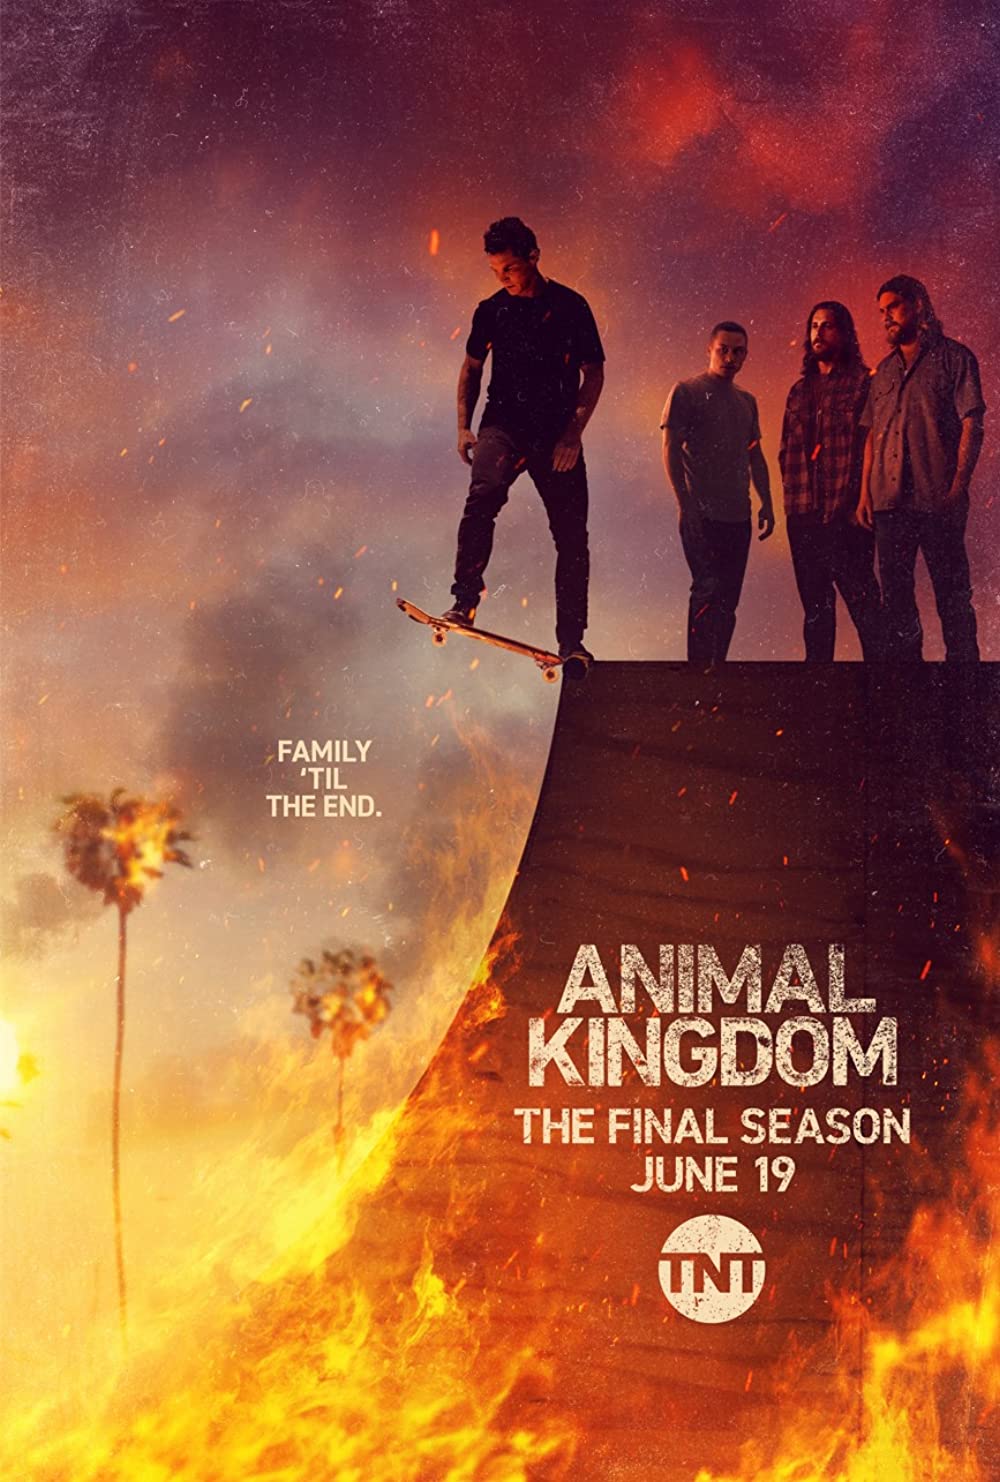 ดูหนังออนไลน์ฟรี Animal Kingdom Season 1 EP.6 แอนนิเมิล คิงด้อม ซีซั่น 1 ตอนที่ 6 (ซับไทย)